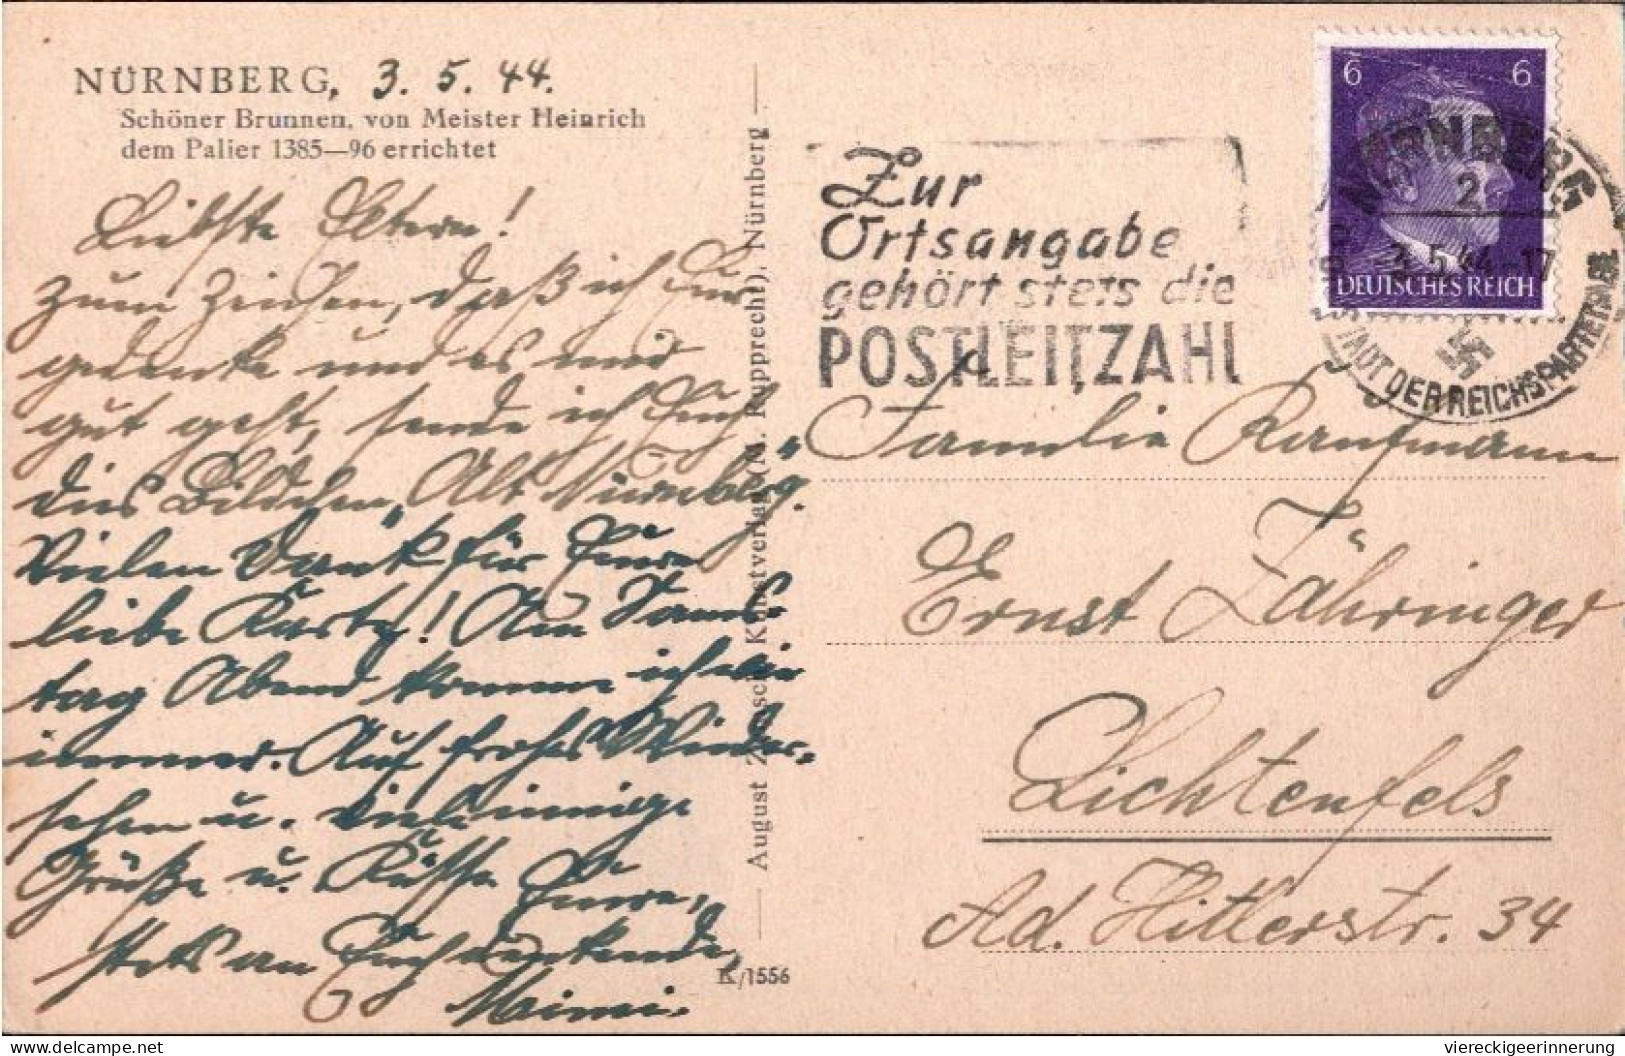 ! Karte Aus Nürnberg, Maschinenwerbestempel 1944, Posteigenwerbung, Zur Ortsangabe Gehört Stets Die  Postleitzahl - Covers & Documents